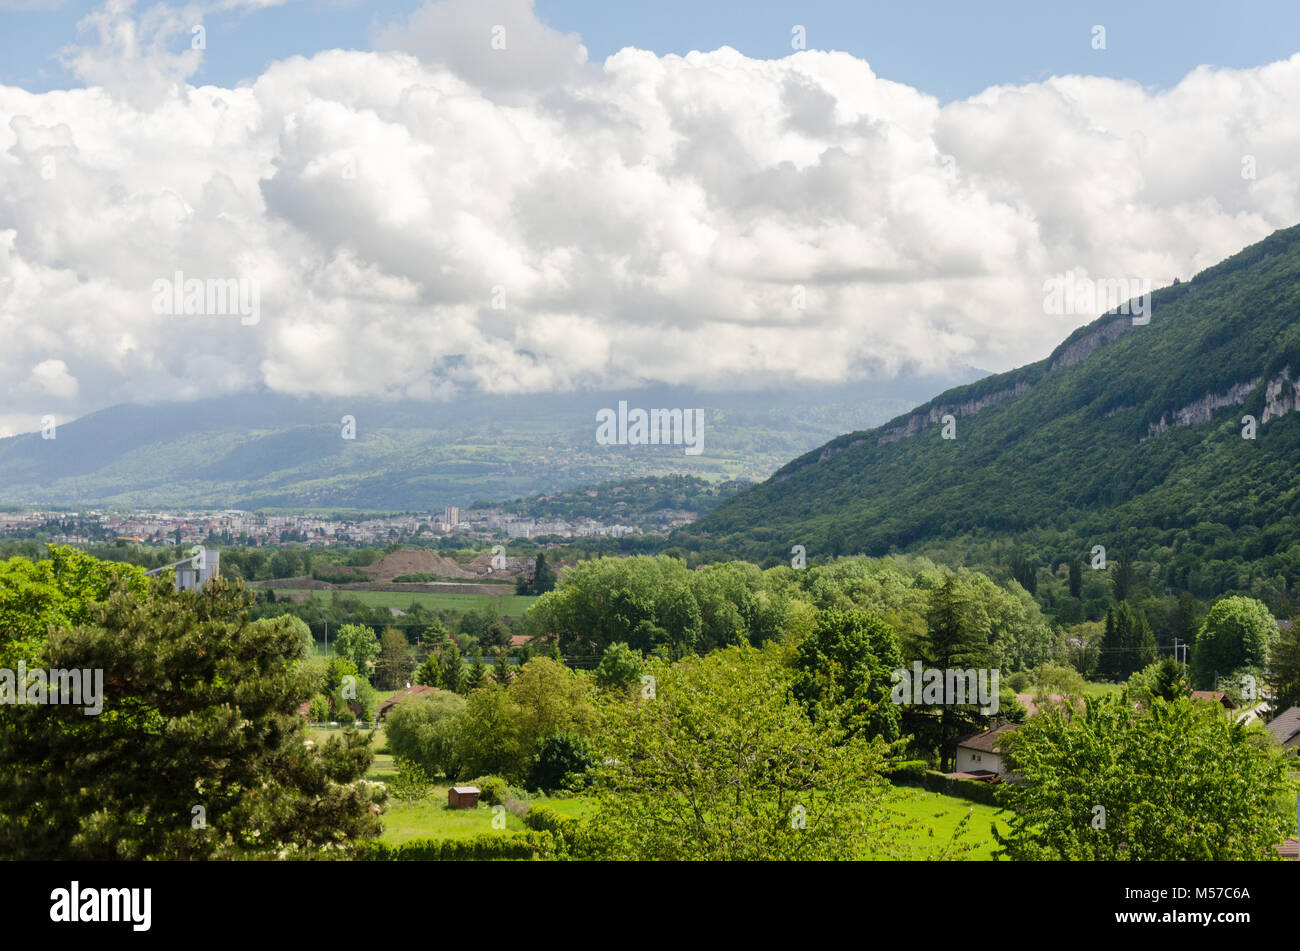 Die schöne Landschaft in der Nähe der Schweiz - Frankreich Grenze auf dem Weg zum mont-salève Cable Car Station. Stockfoto